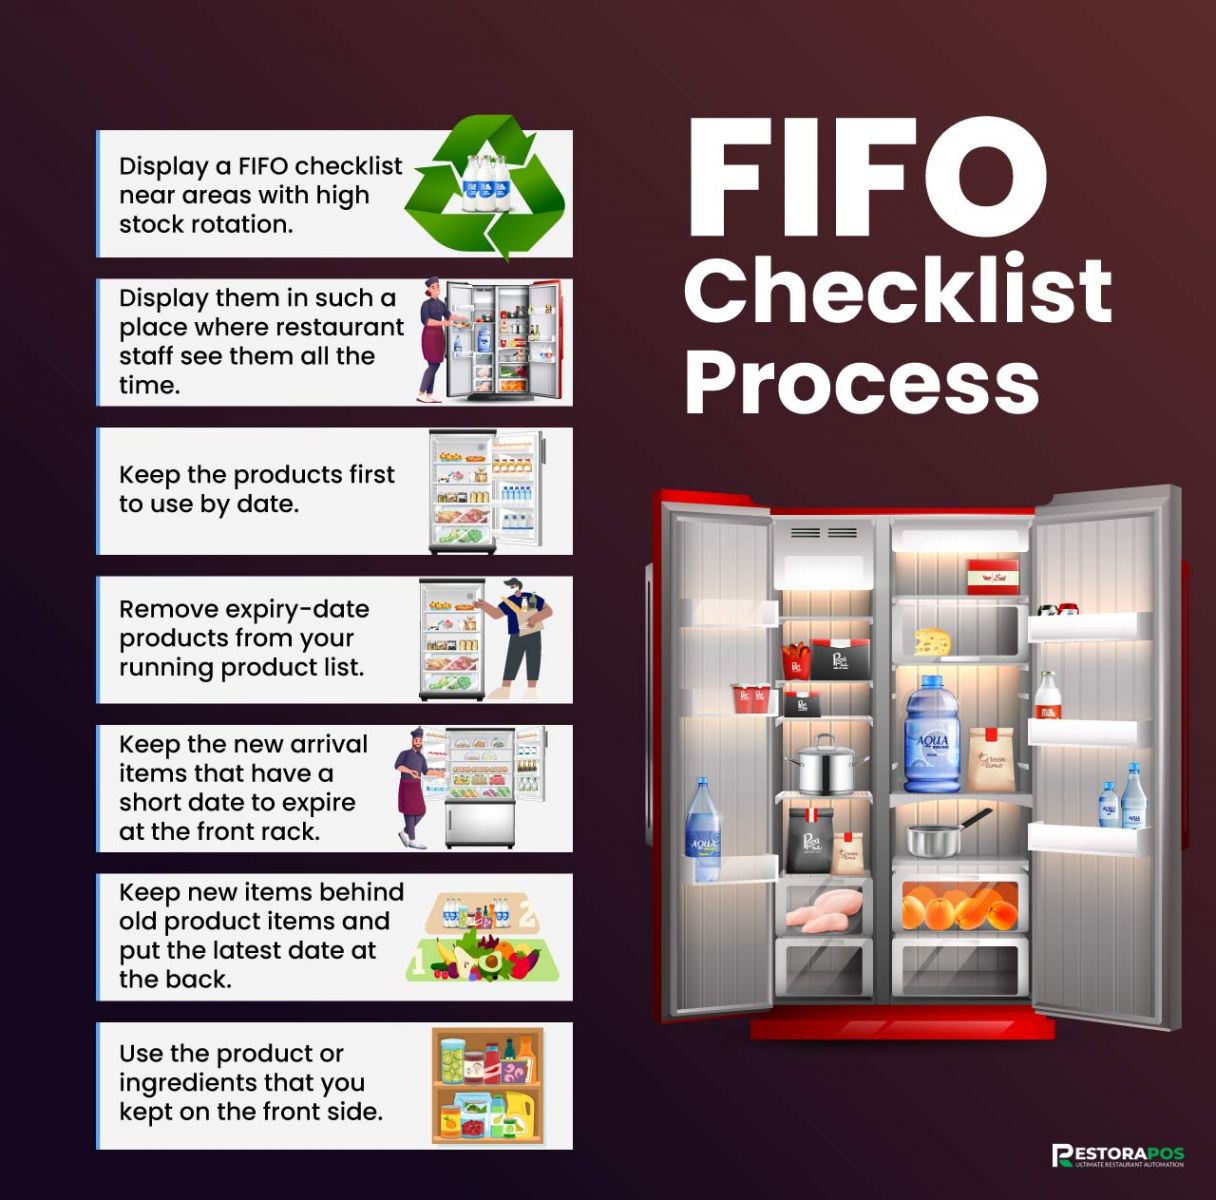 FIFO Checklist Process